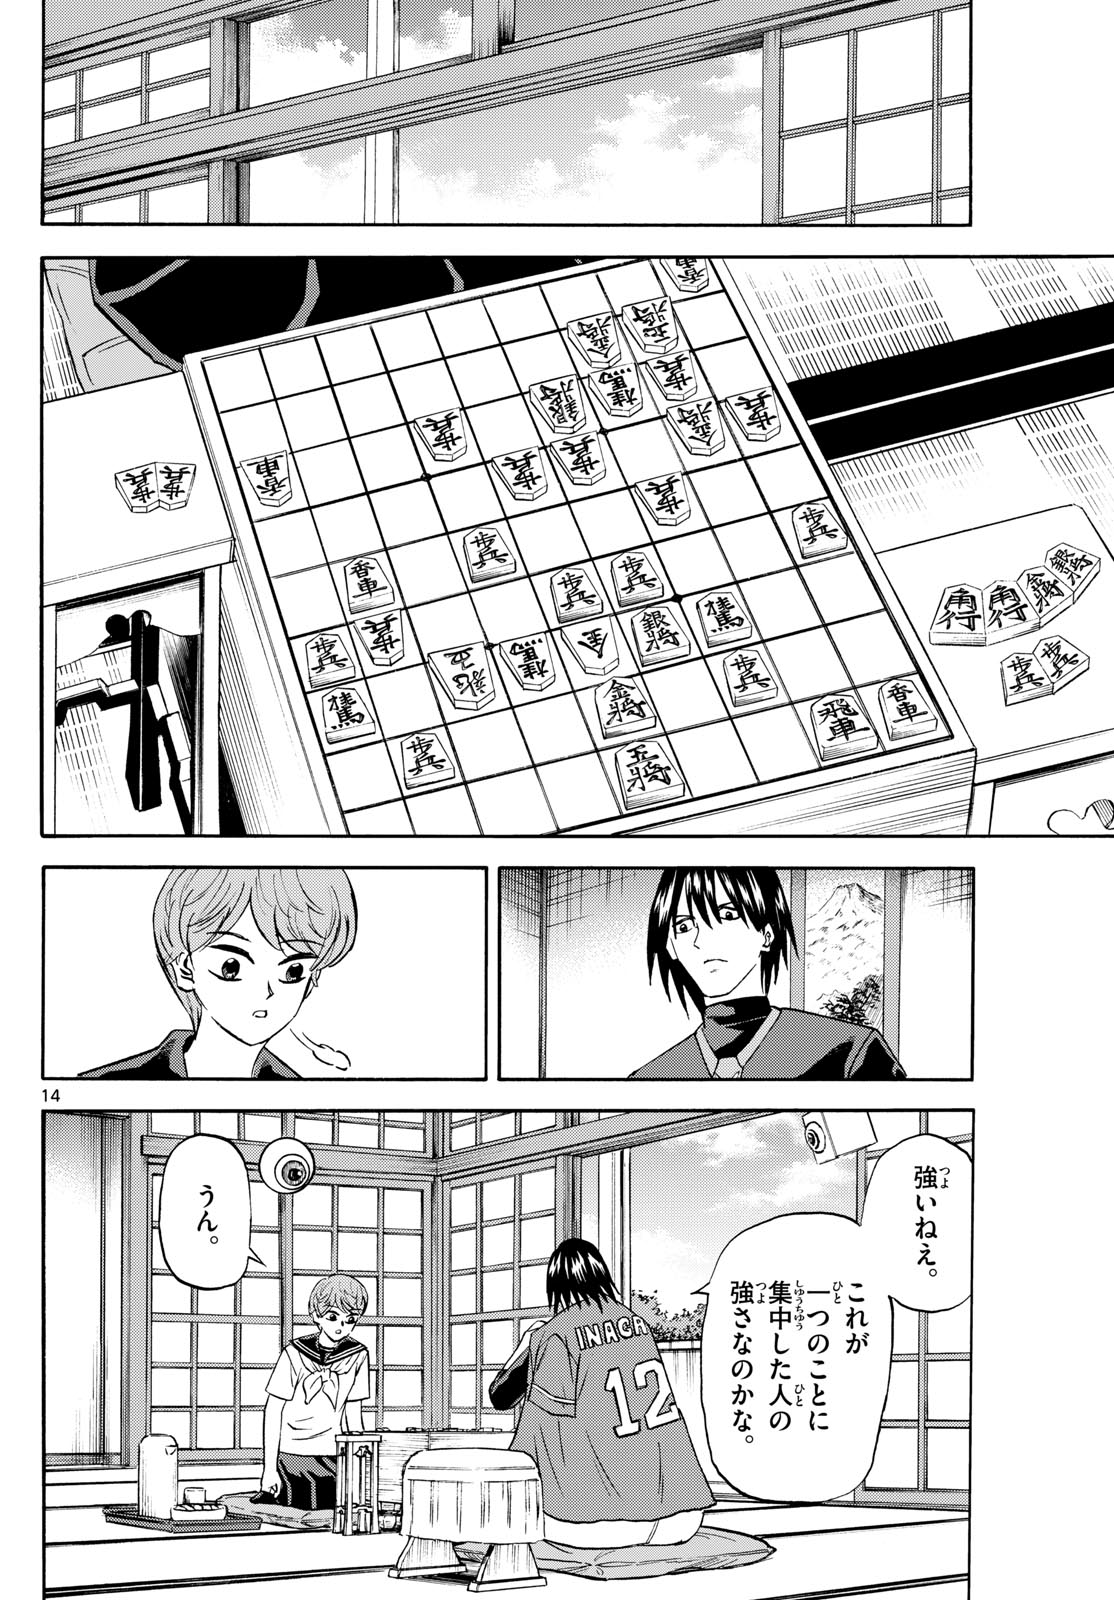 Tatsu to Ichigo - Chapter 198 - Page 14